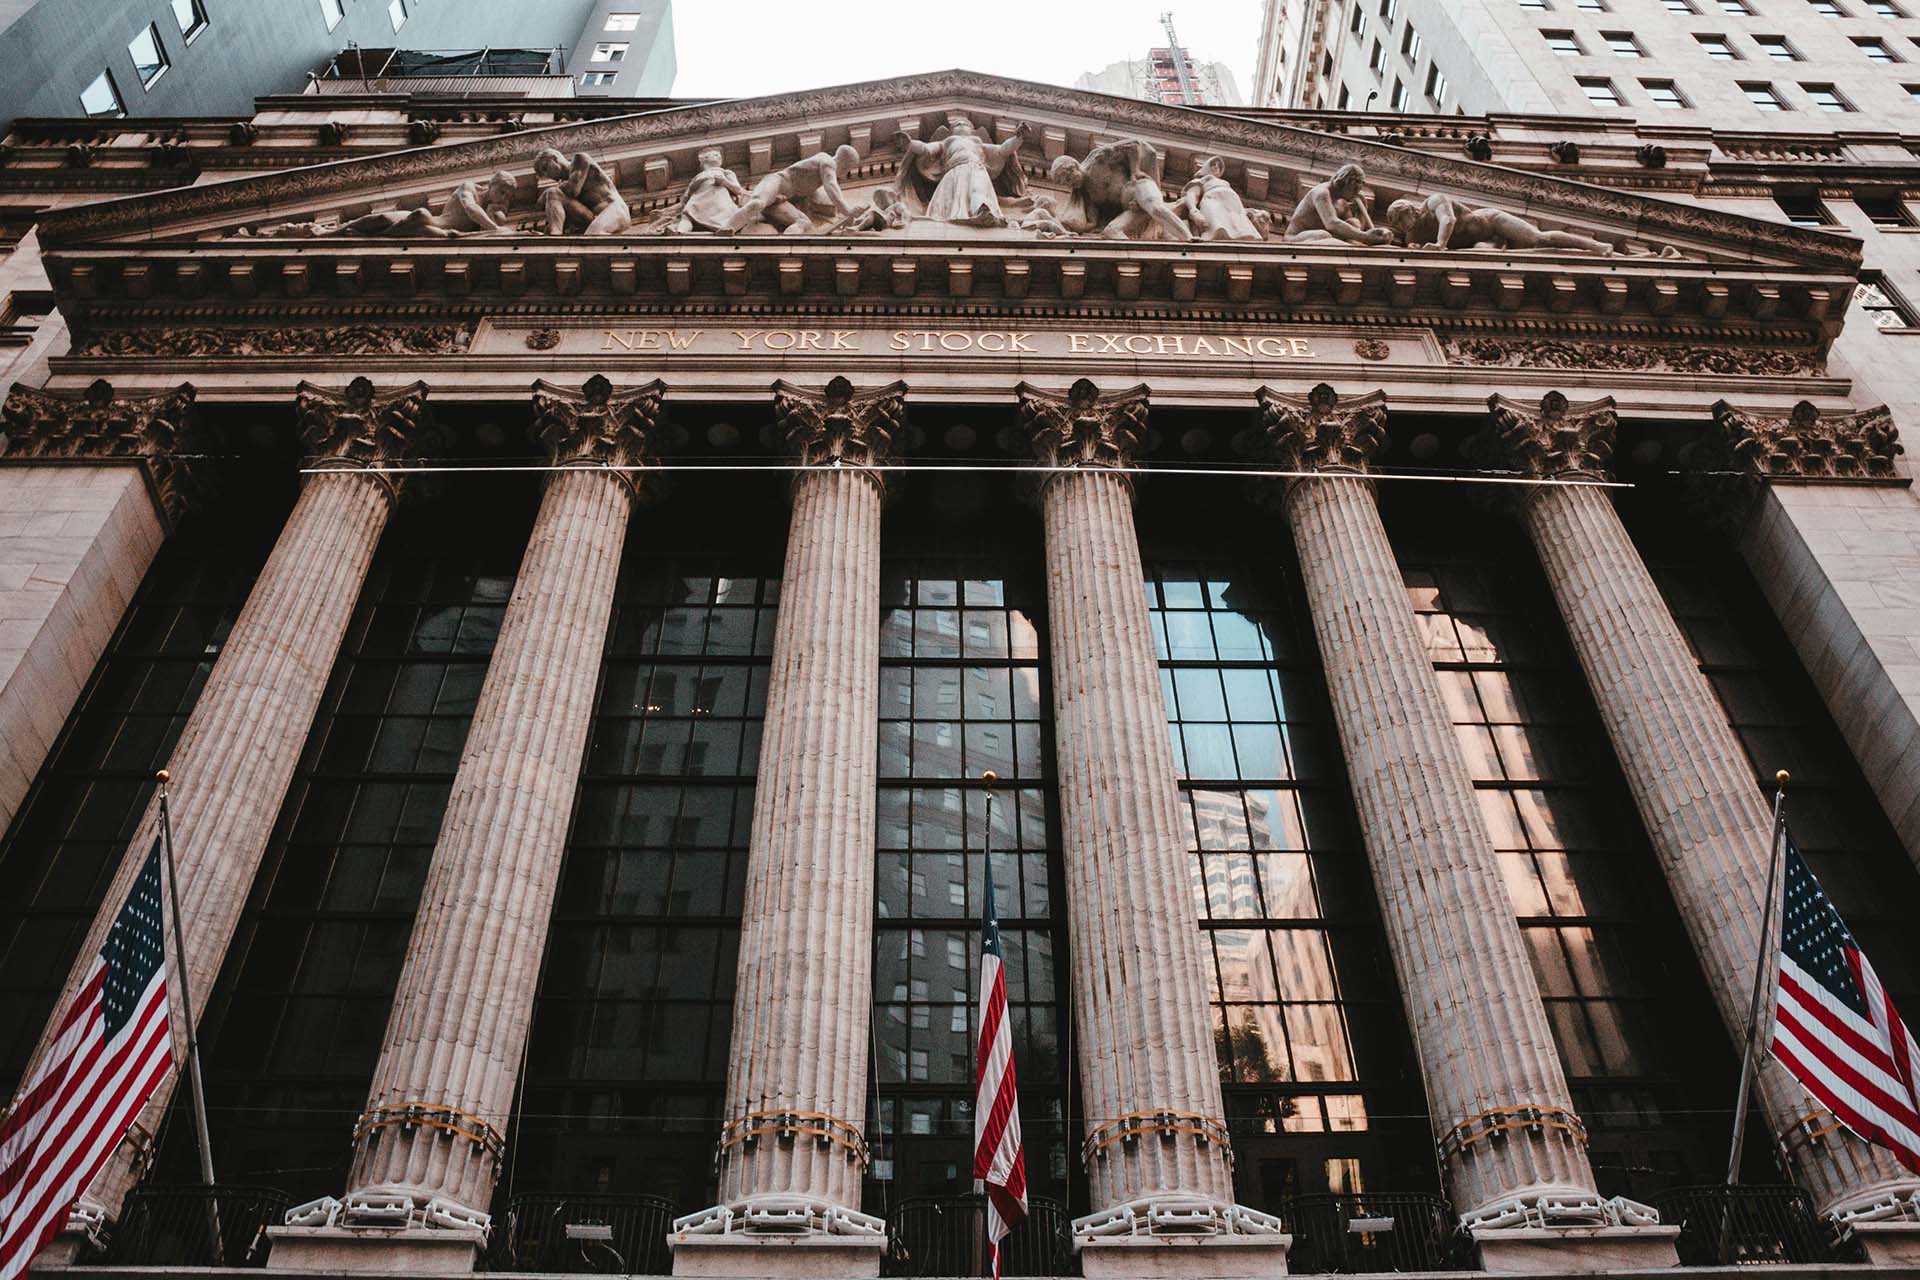 New York City Stock Exchange